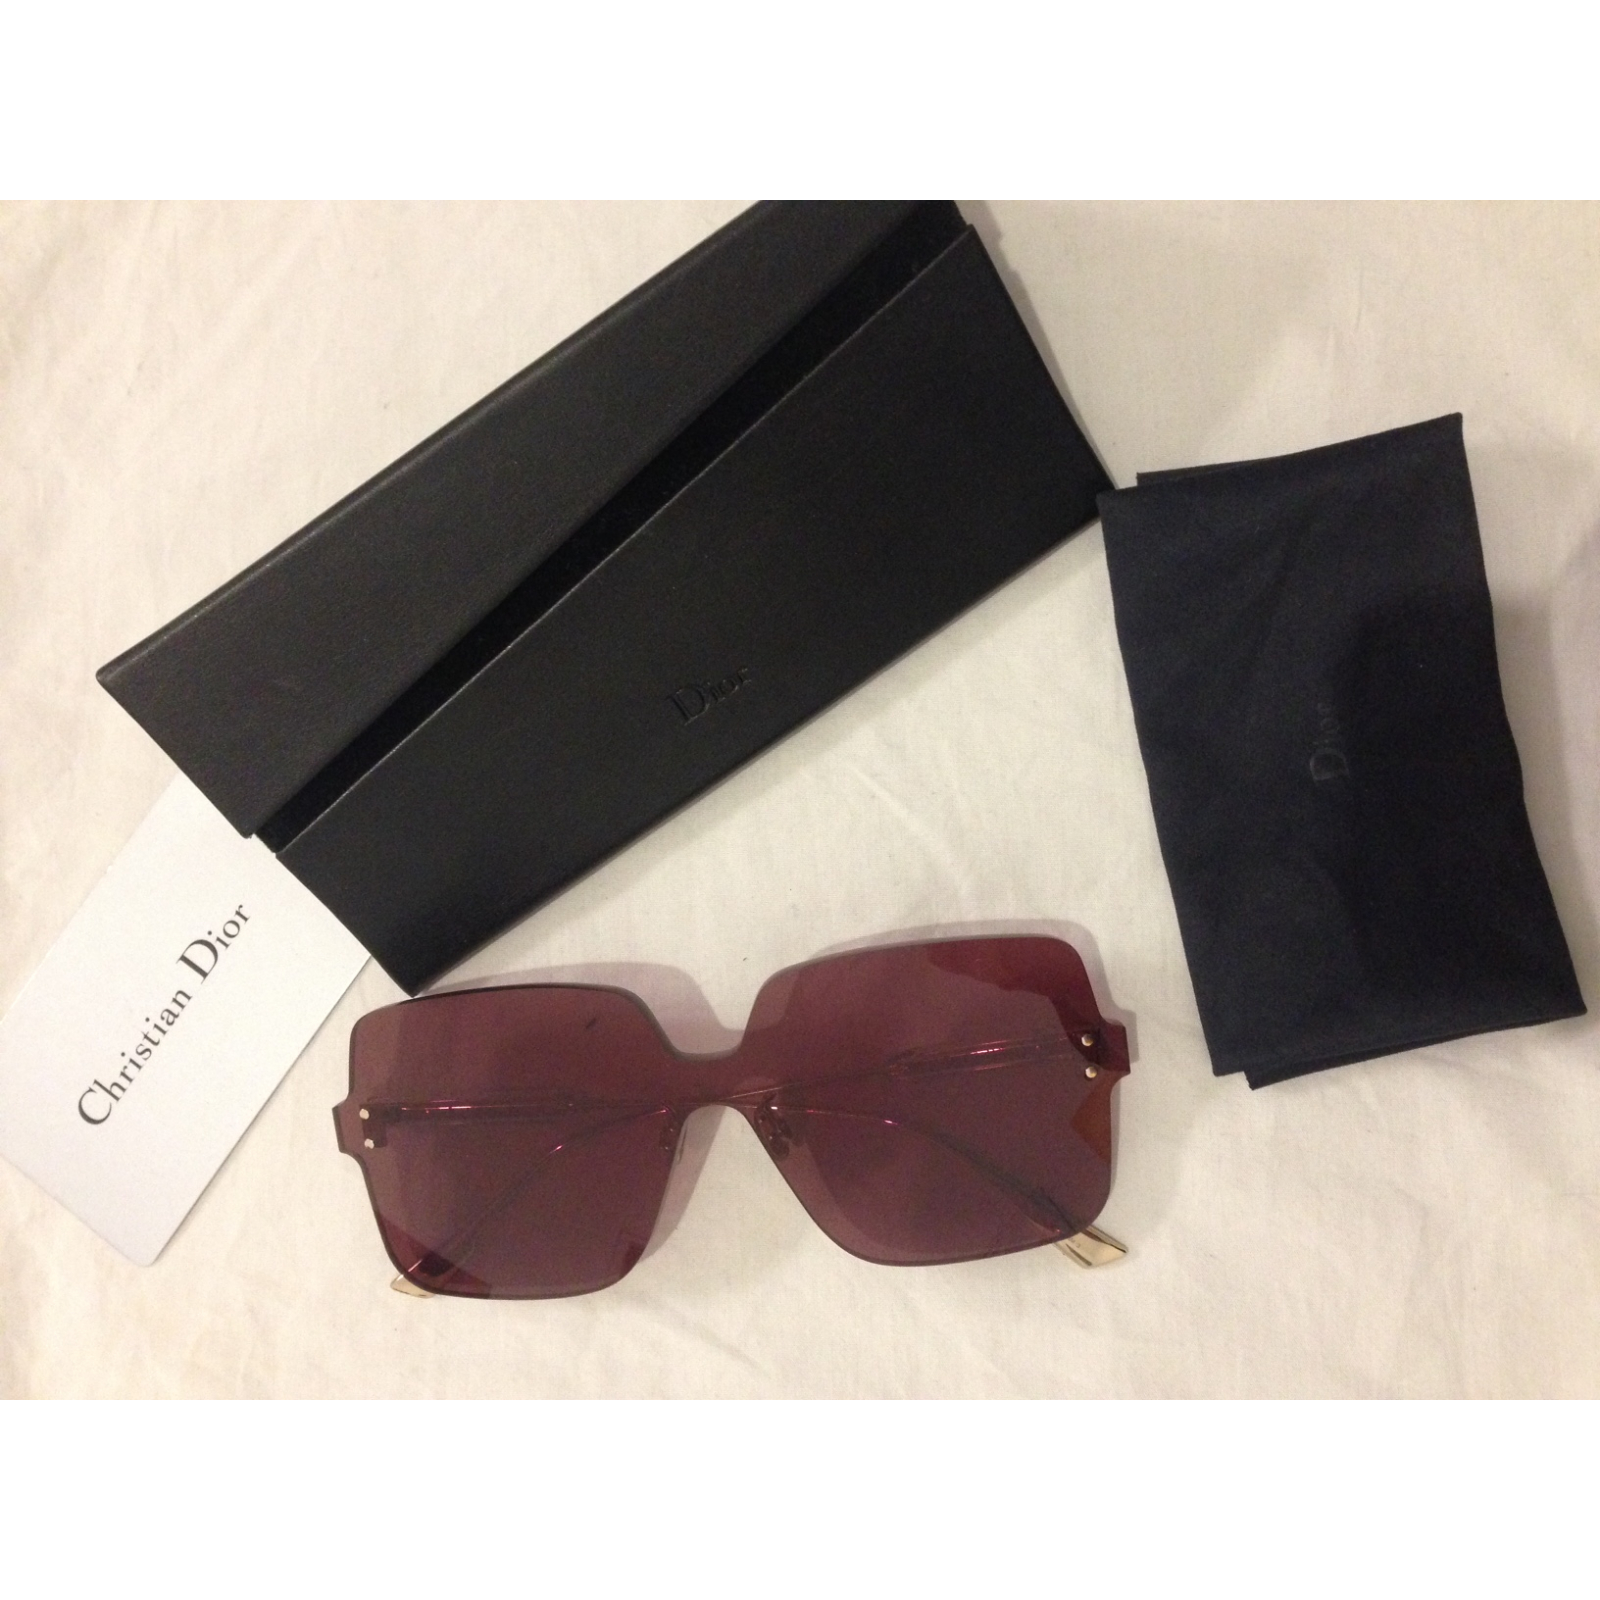 Christian Dior damskie okulary przeciwsłoneczne ColorQuake, dark red